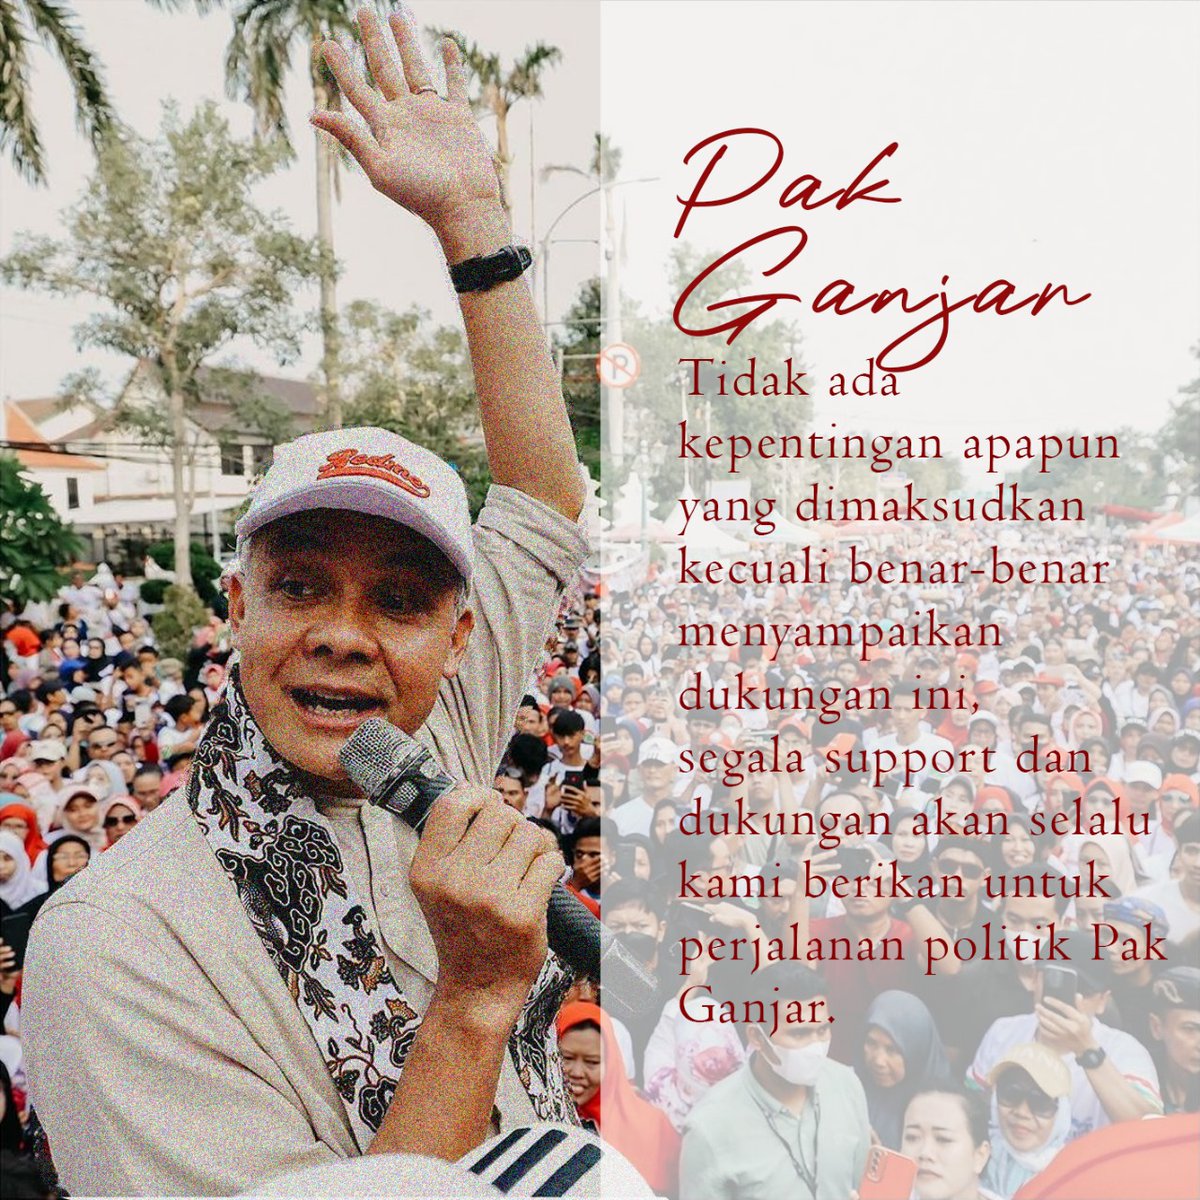 Meskipun hasilnya belum terlihat, rakyat percaya bahwa setiap langkah Ganjar Pranowomembawa kebaikan untuk a depan. Kesejahteraan berkali lipat, Indonesia Hebat ! @draaxu 
#KitaAdalahTiga
#BanggaBersamaGPMMD